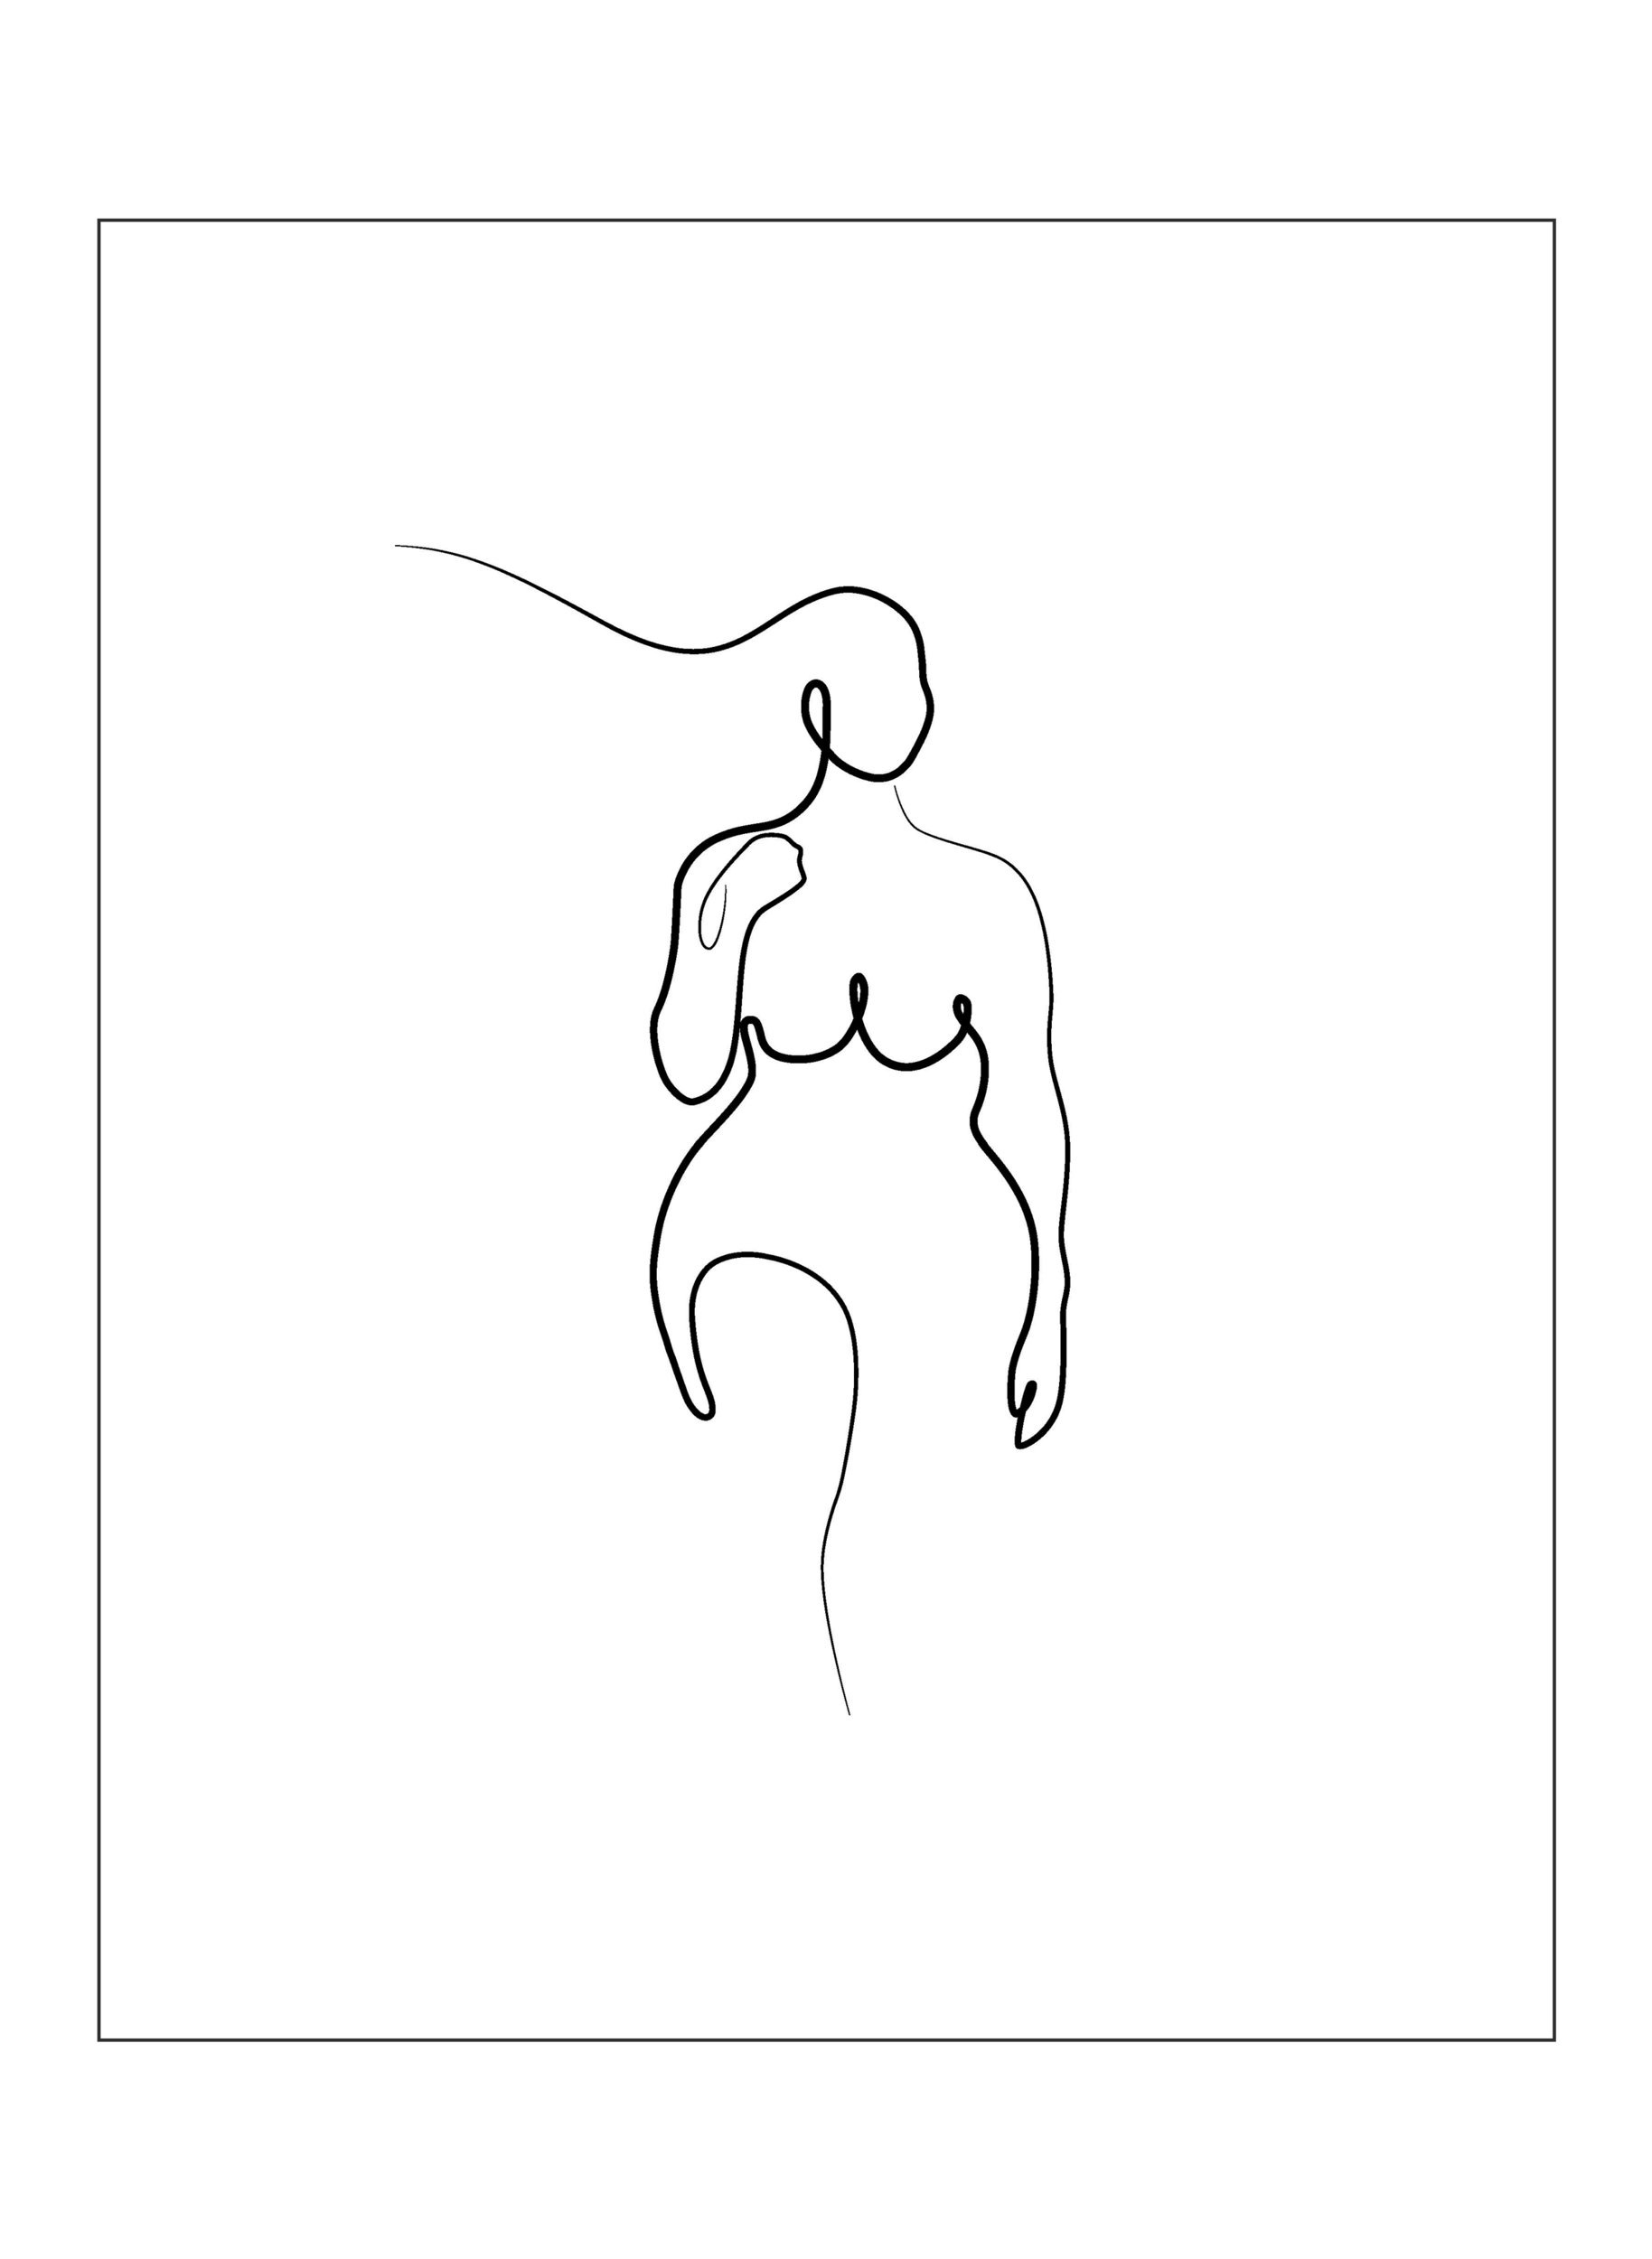 Plakat med Plakat med kvinnesilhuett, Poster 1 Woman Whi